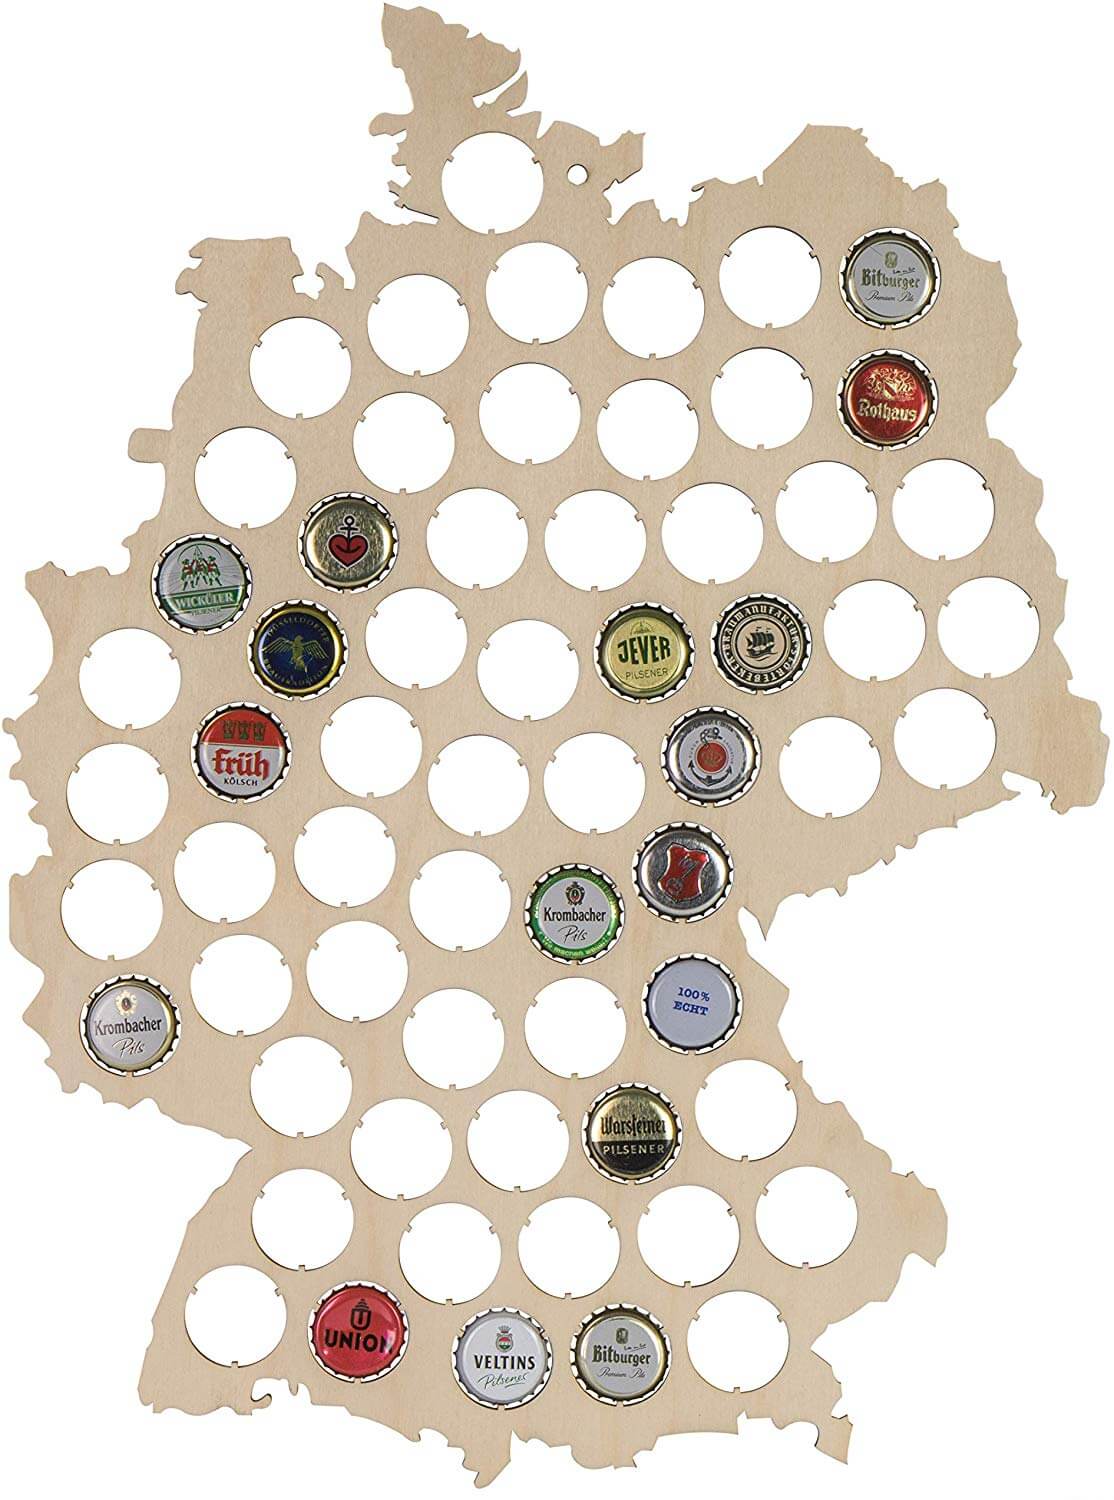 Kronkorken Karte - Kronkorken Sammel Karte - Deutschlandkarte zum Bierdeckel sammeln - Bierdeckelkarte